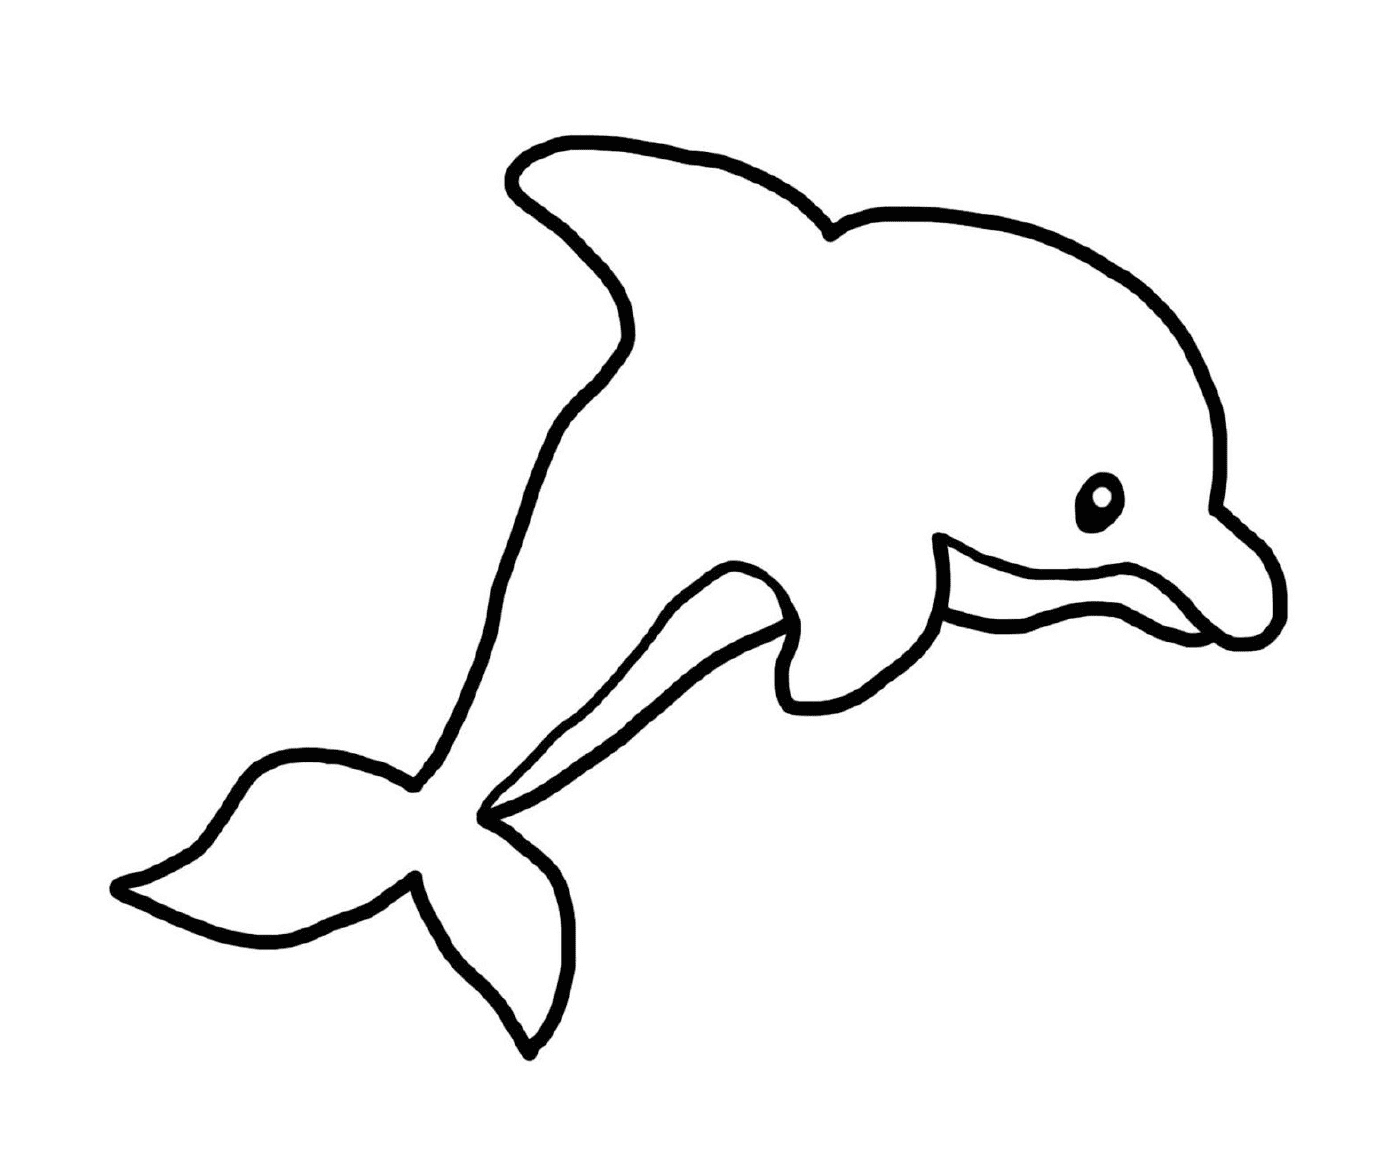  Delfin en el jardín de infantes 